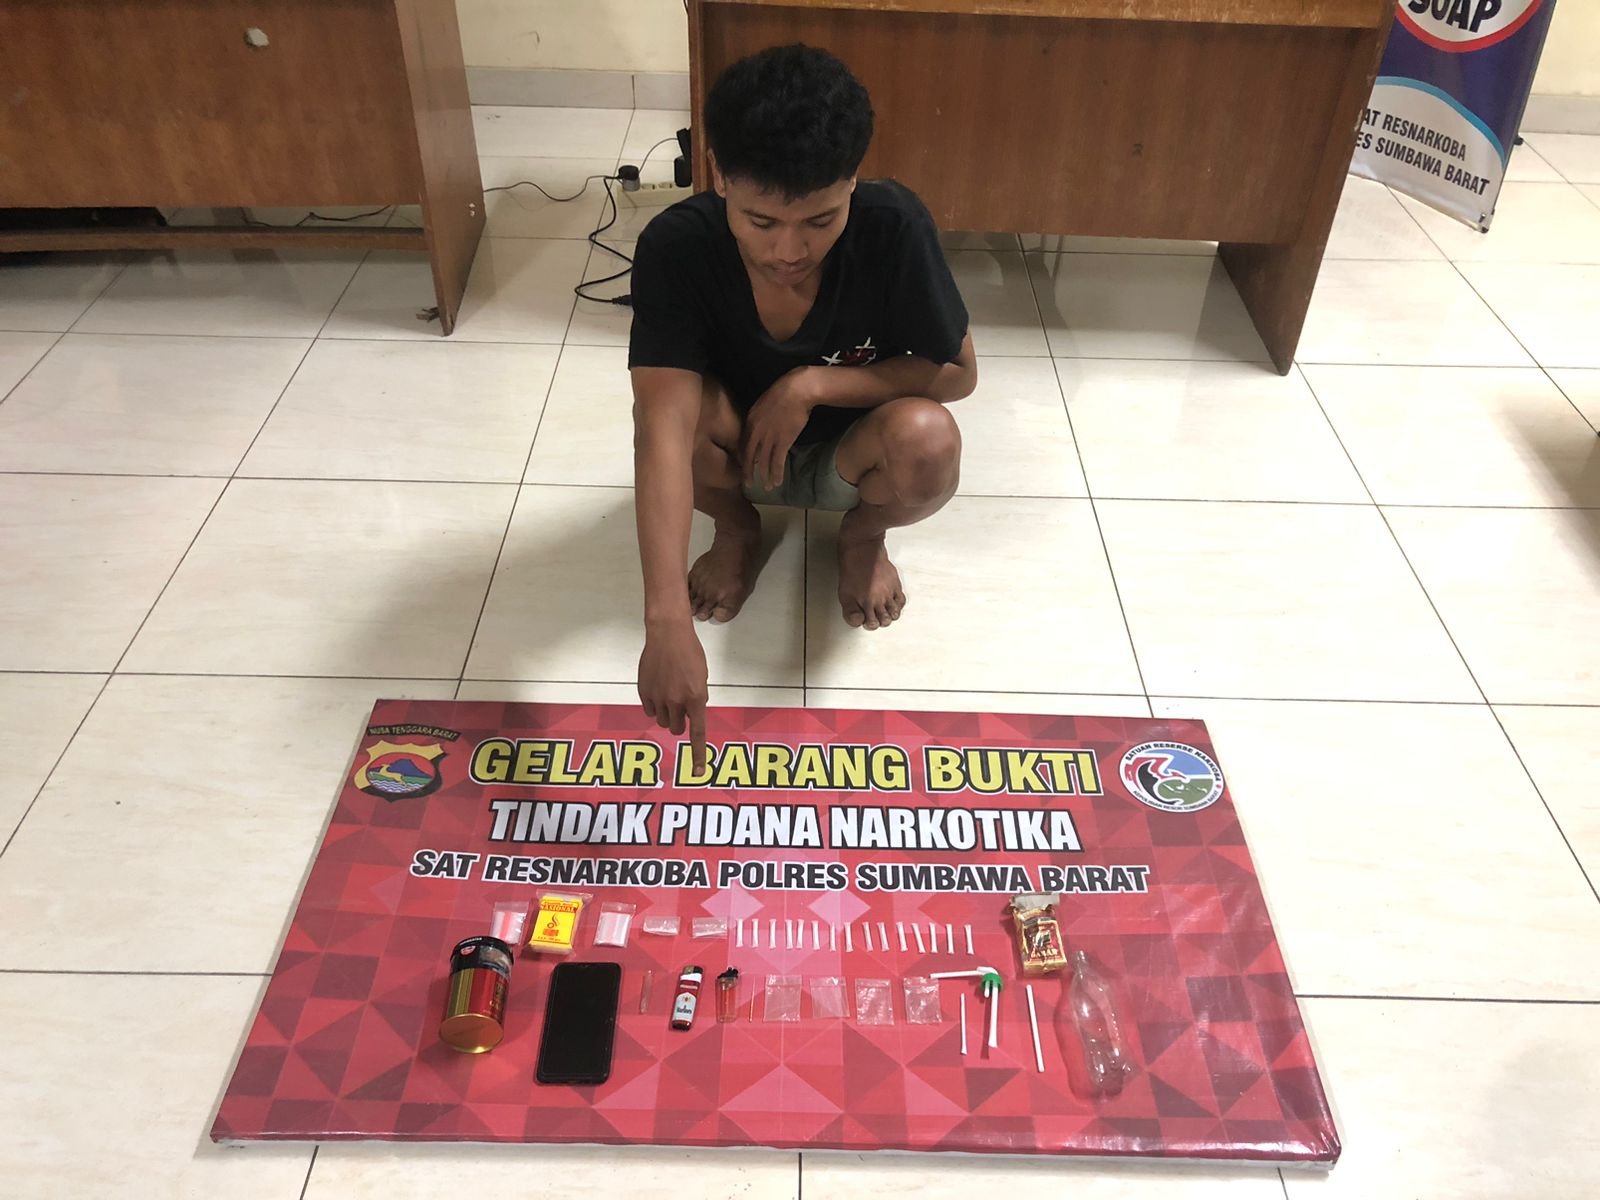 Ketua RT Saksi Penangkapan Pelaku Narkoba, 5,78 Gram Sabu Diamankan